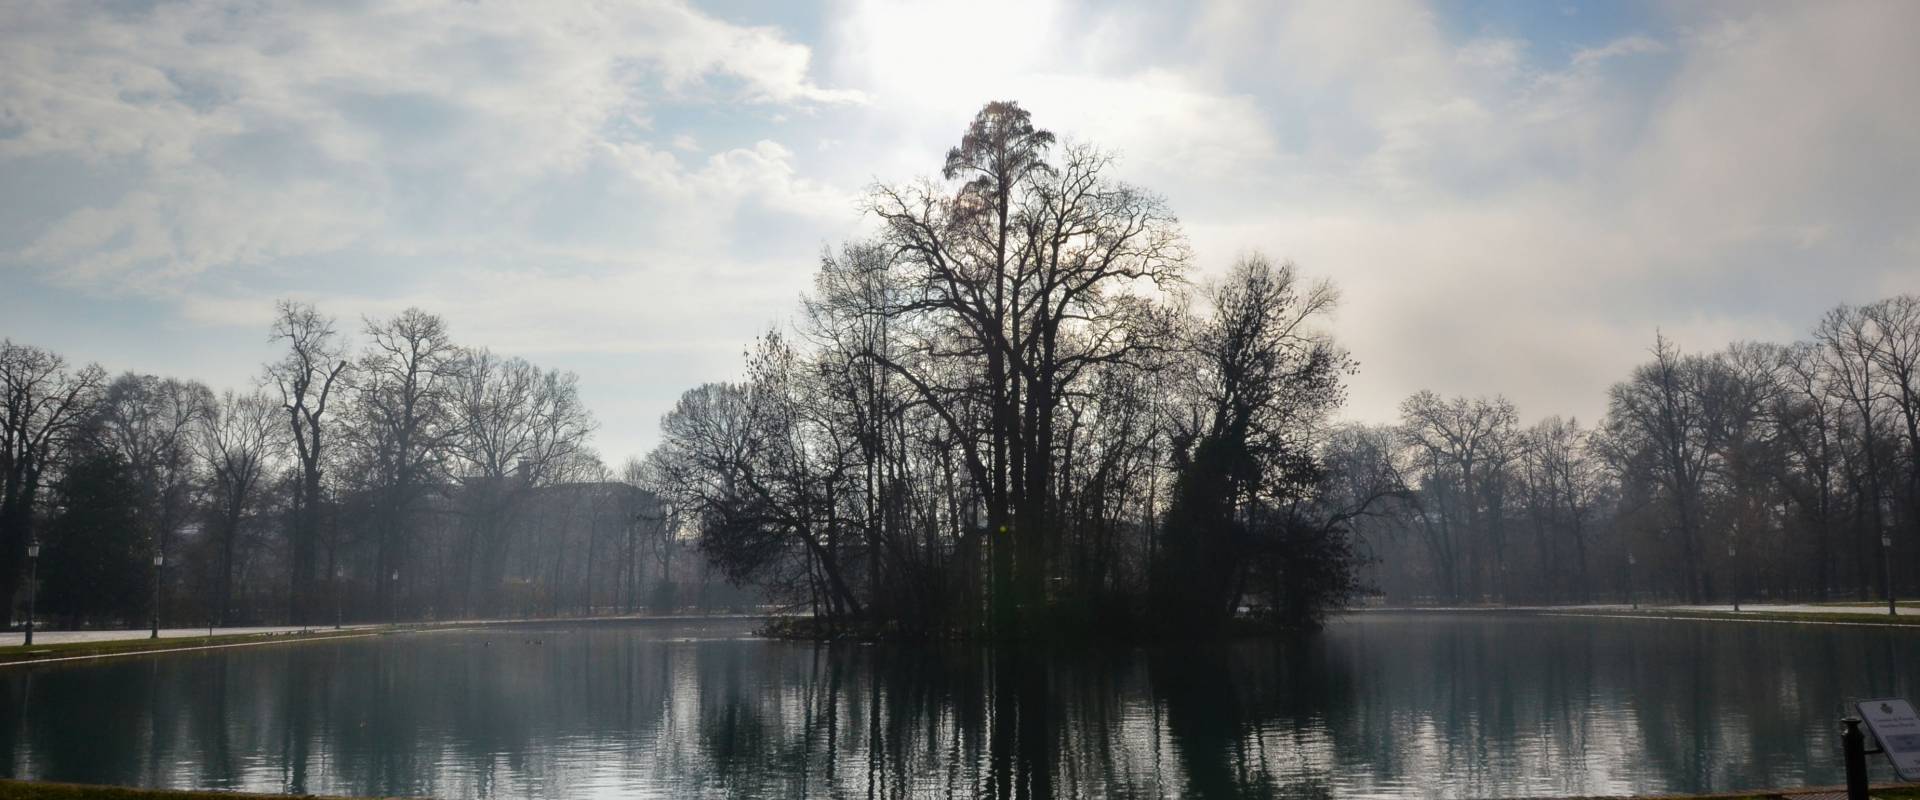 Parco ducale di Parma photo by Paperkat